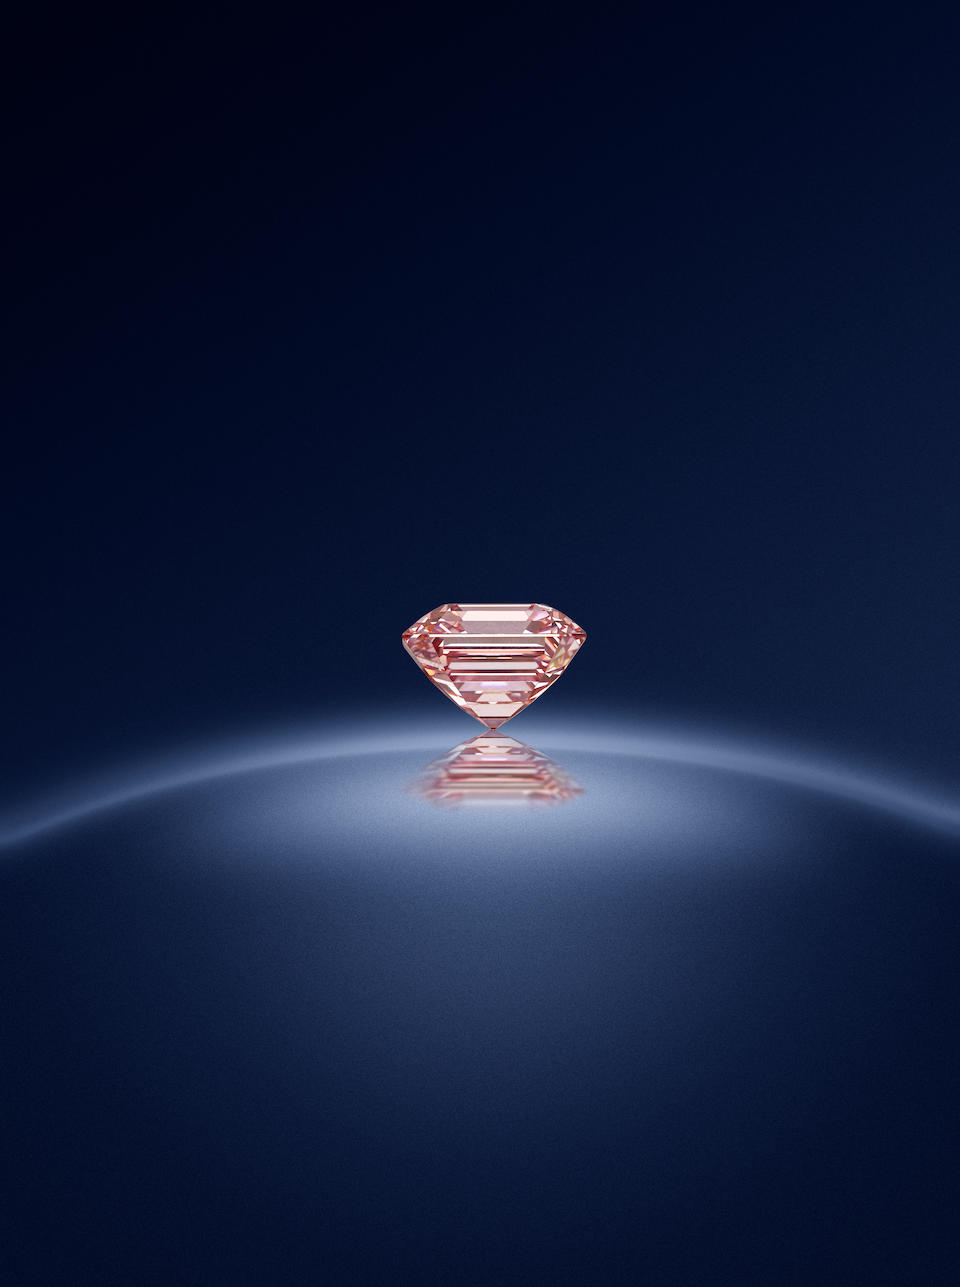 A fine fancy pink diamond